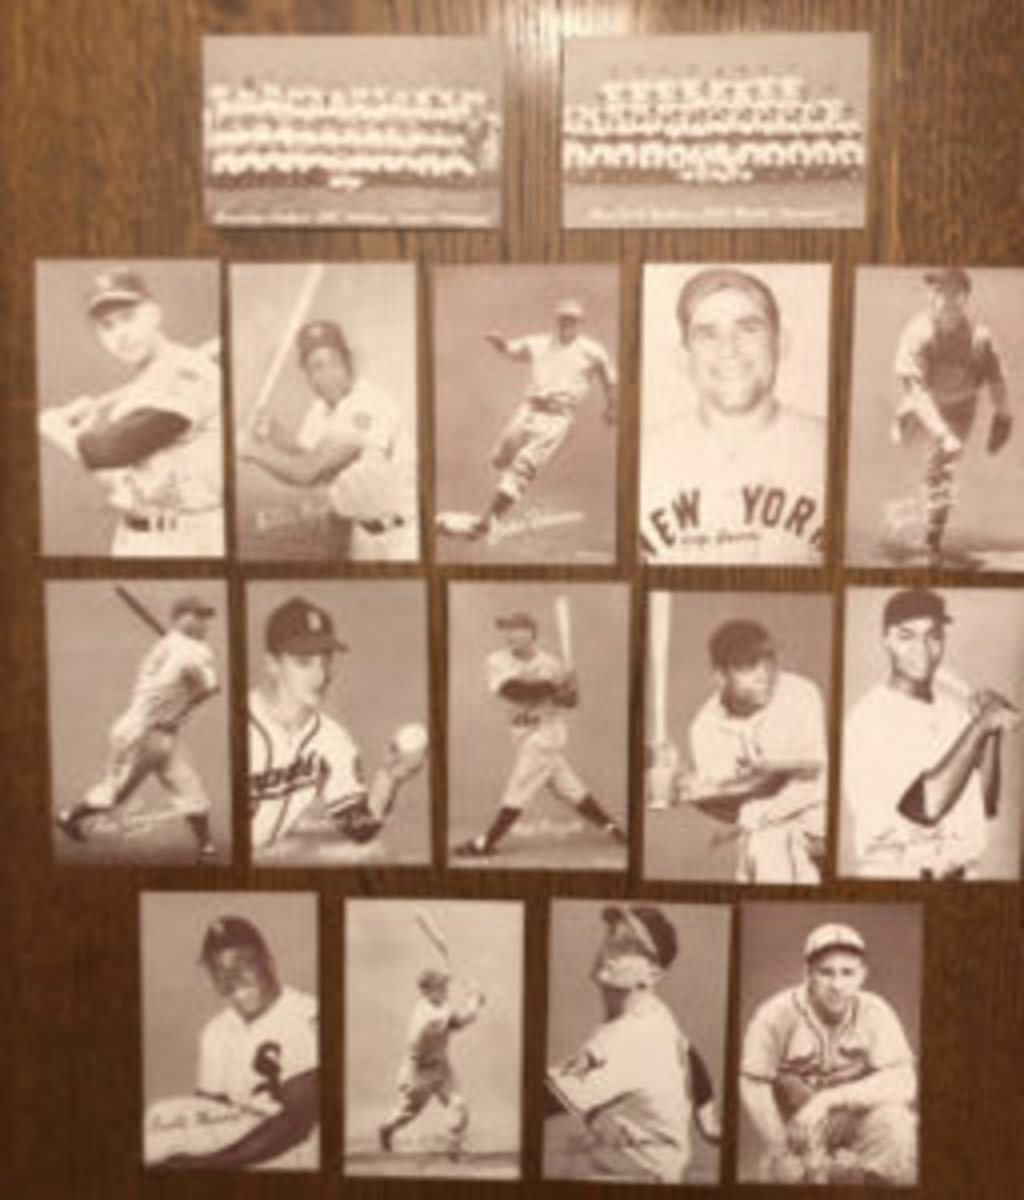  One machine had 110 baseball stars from 1953.